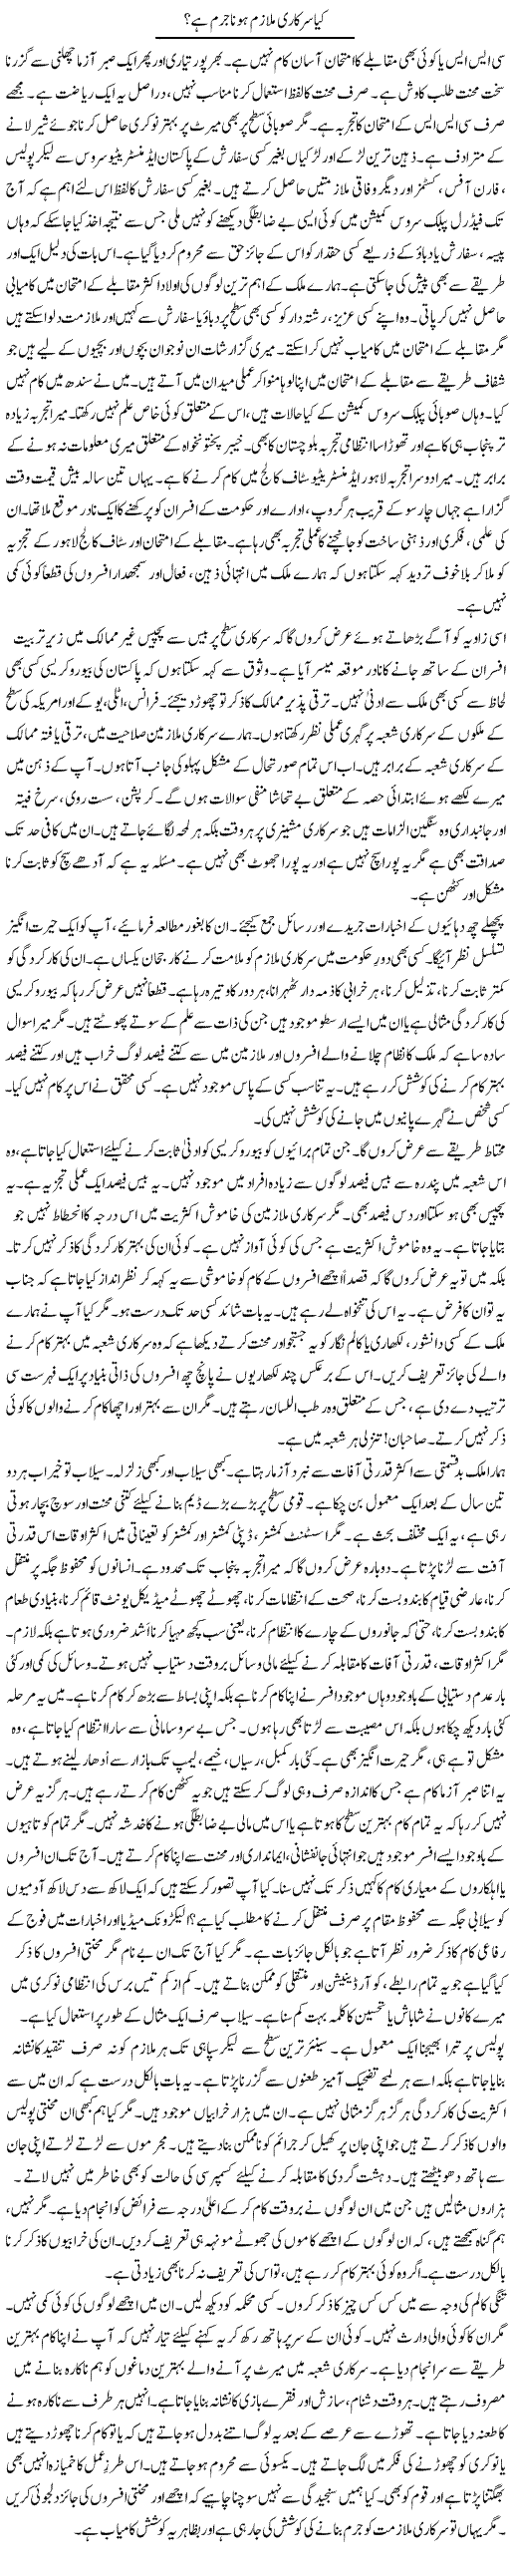 Kia Sarkari Mulazim Hona Jurm Hai? | Rao Manzar Hayat | Daily Urdu Columns